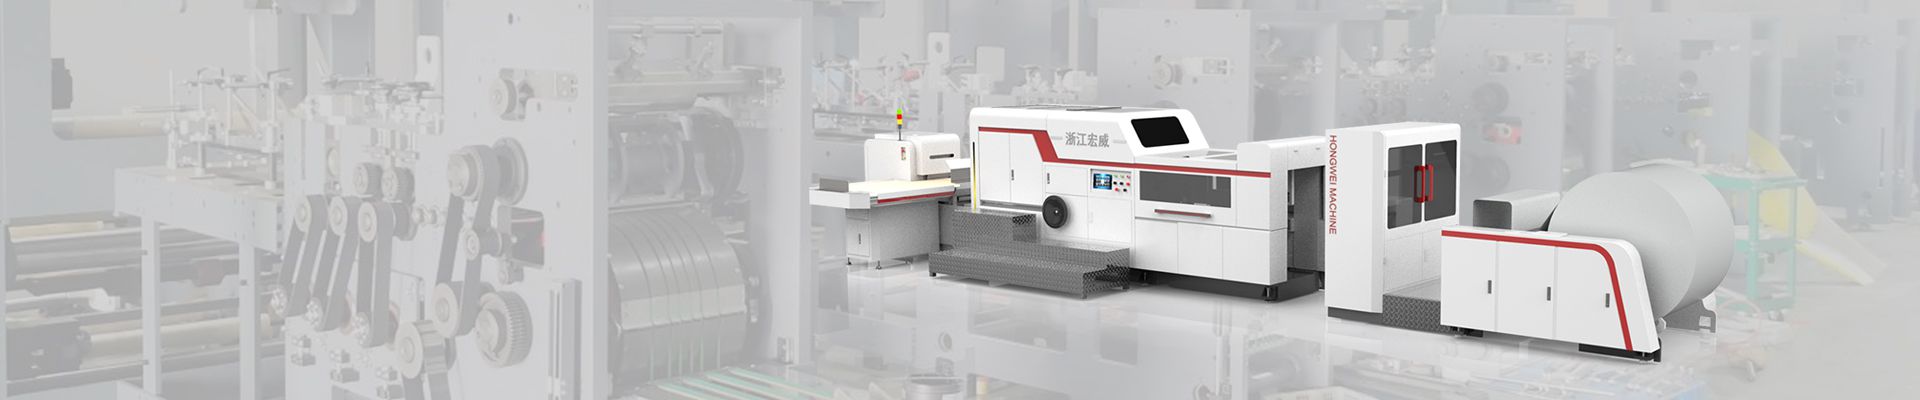 Ruian Xinke Machinery Co., Ltd.